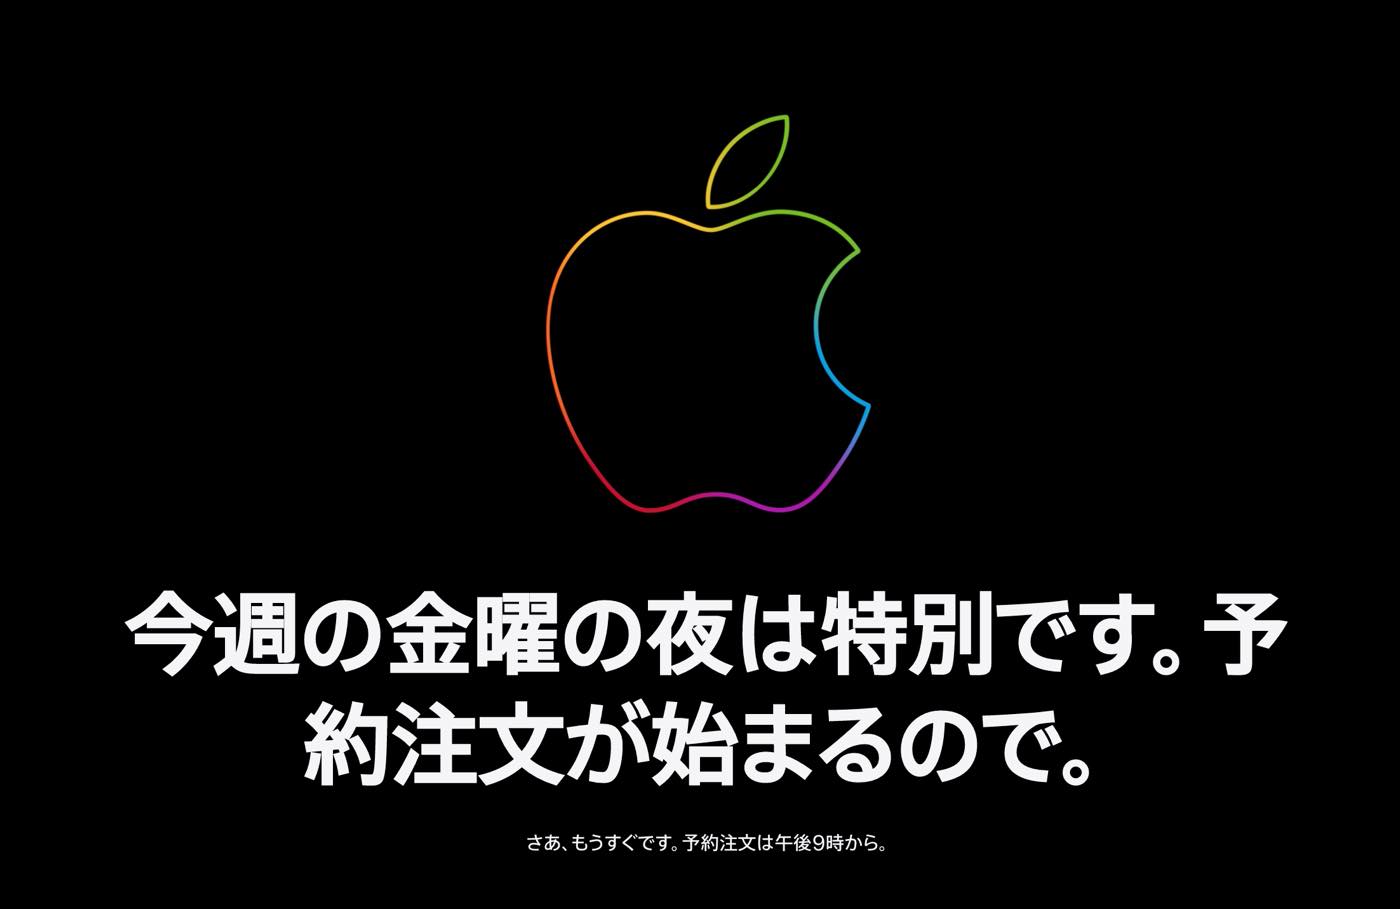 Apple公式サイトがメンテナンス中に − 本日21時より｢iPhone 12/12 Pro｣の予約受付開始へ